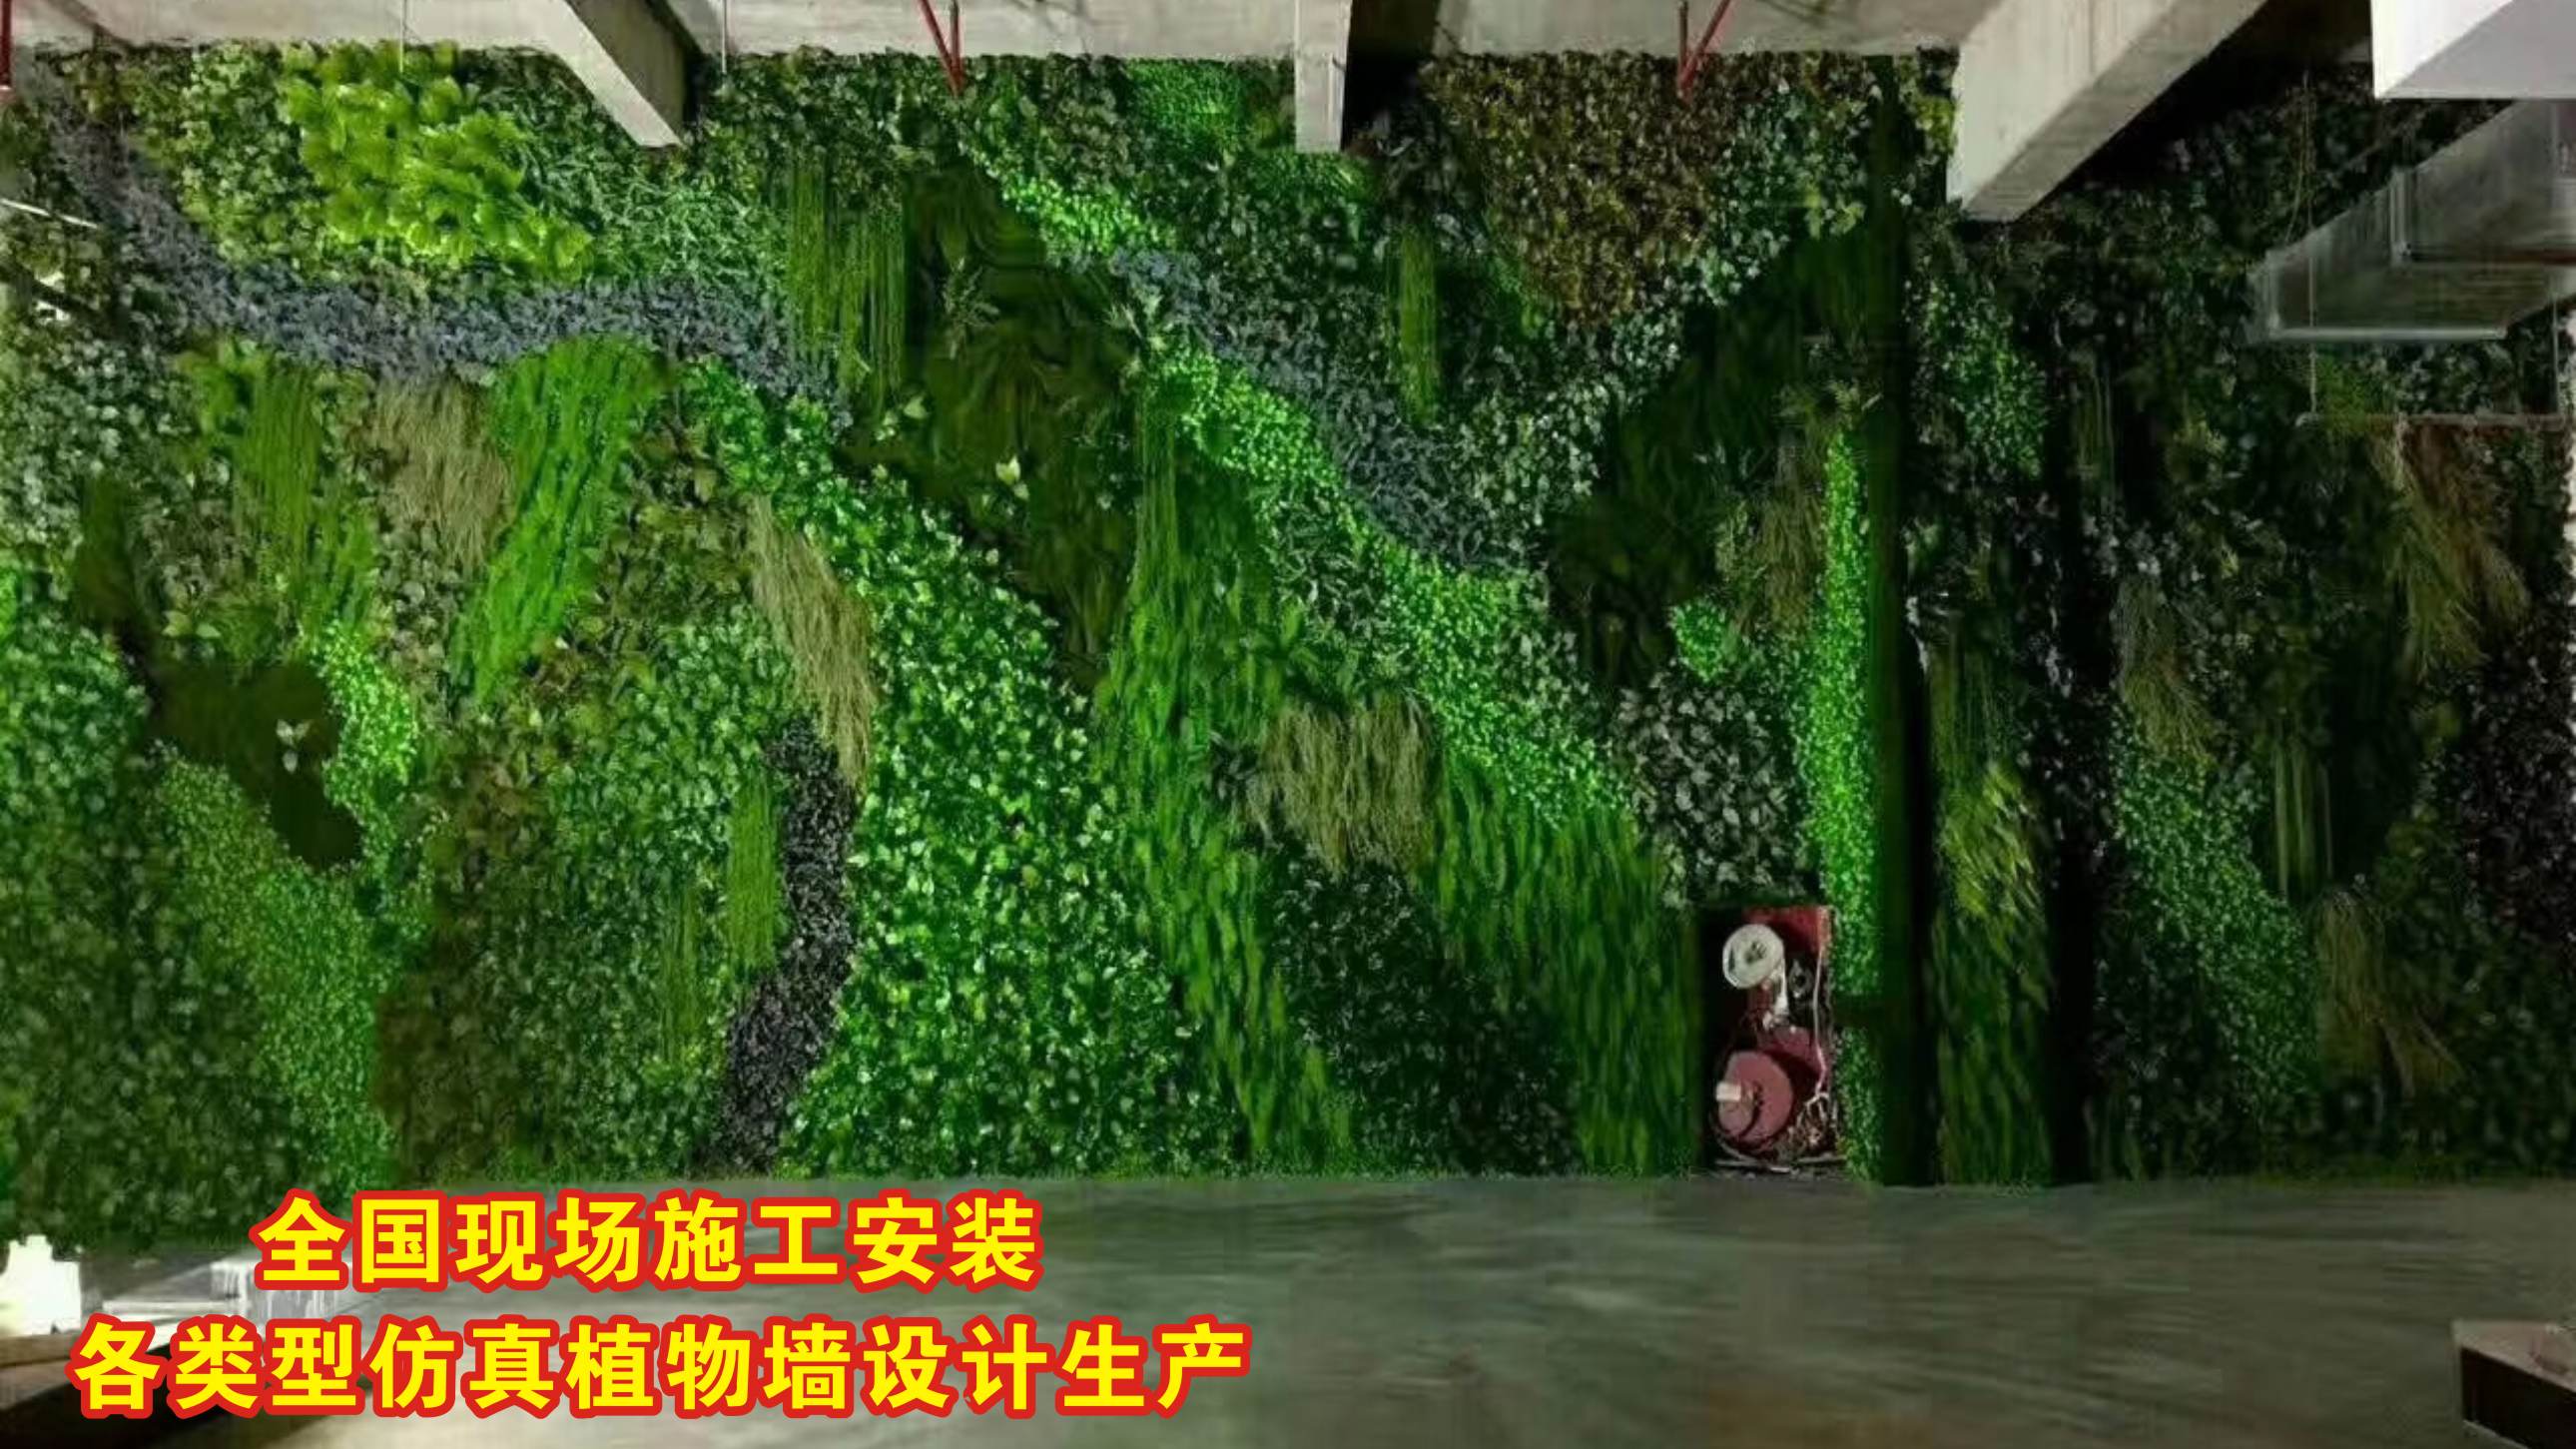 优质仿真绿植墙/墙体植物种类丰富,防晒/阻燃，按需设计生产施工约300.00元(图7)